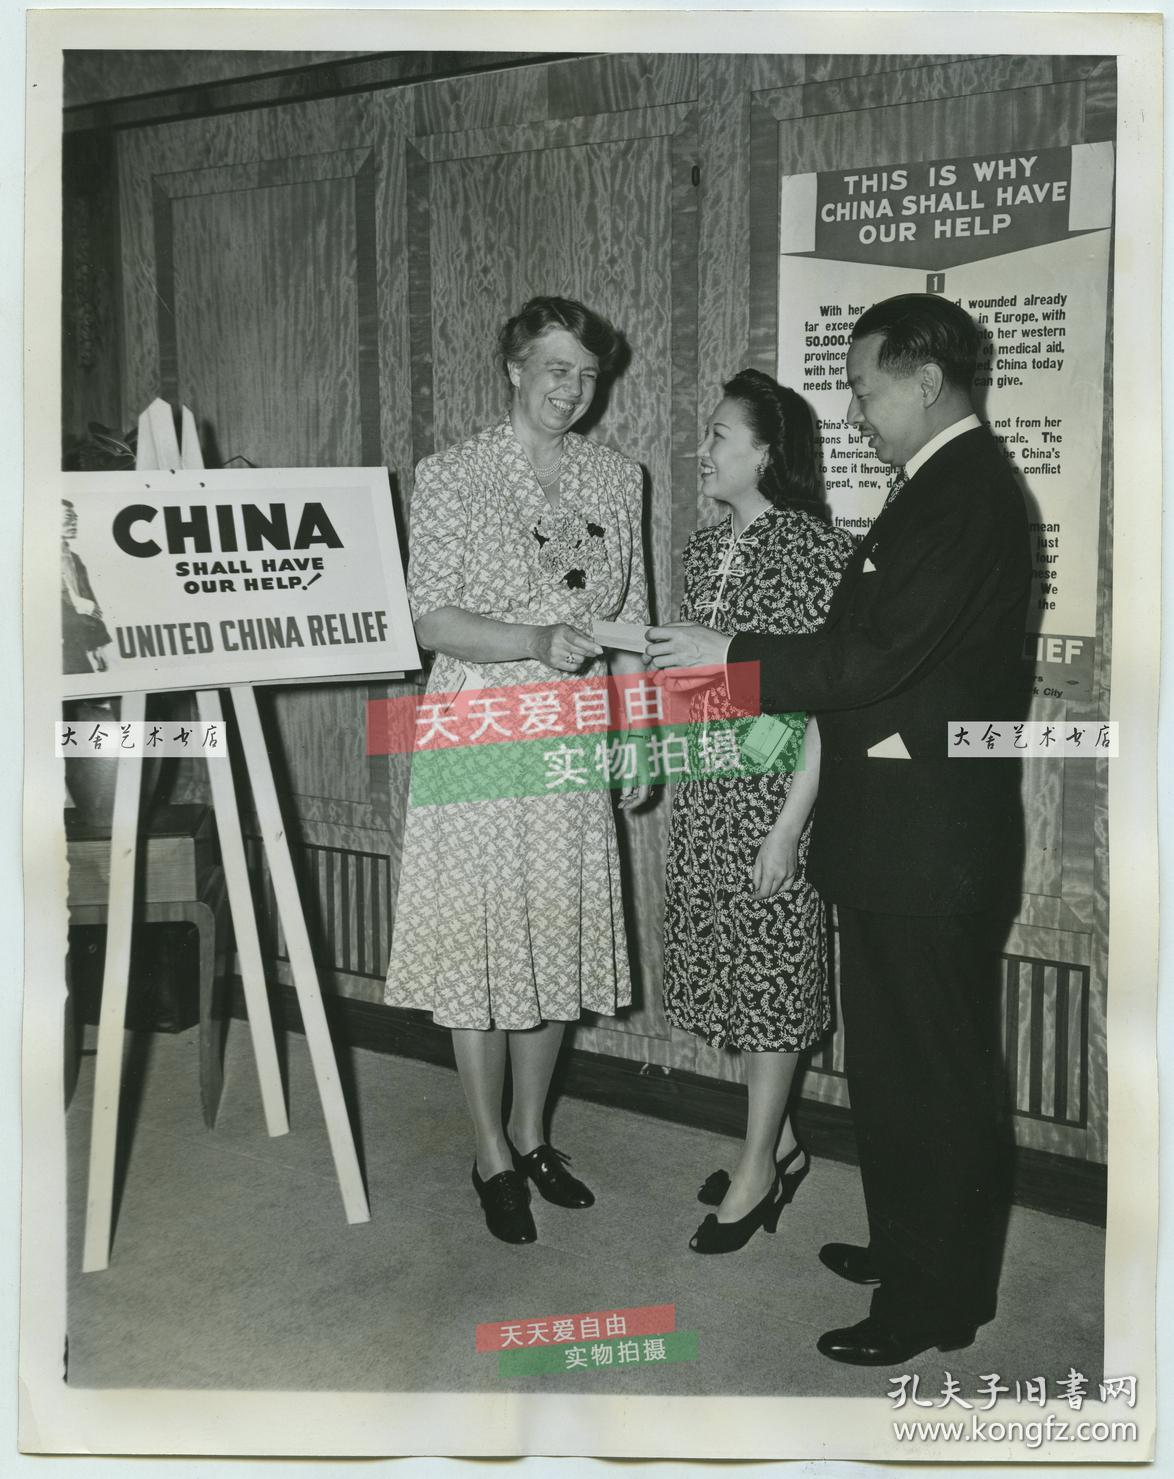 1941年优雅的中国女飞行员李霞卿, 美国总统罗斯福夫人，中华民国领事于宗庆博士（音译）合影，这是一个帮助中国抗日救援的集会。总统夫人身穿的连衣裙是在筹款义卖中购买，李霞清穿的中式花裙为总统夫人赠与蒋介石夫人宋美龄的同款。22.8X18厘米